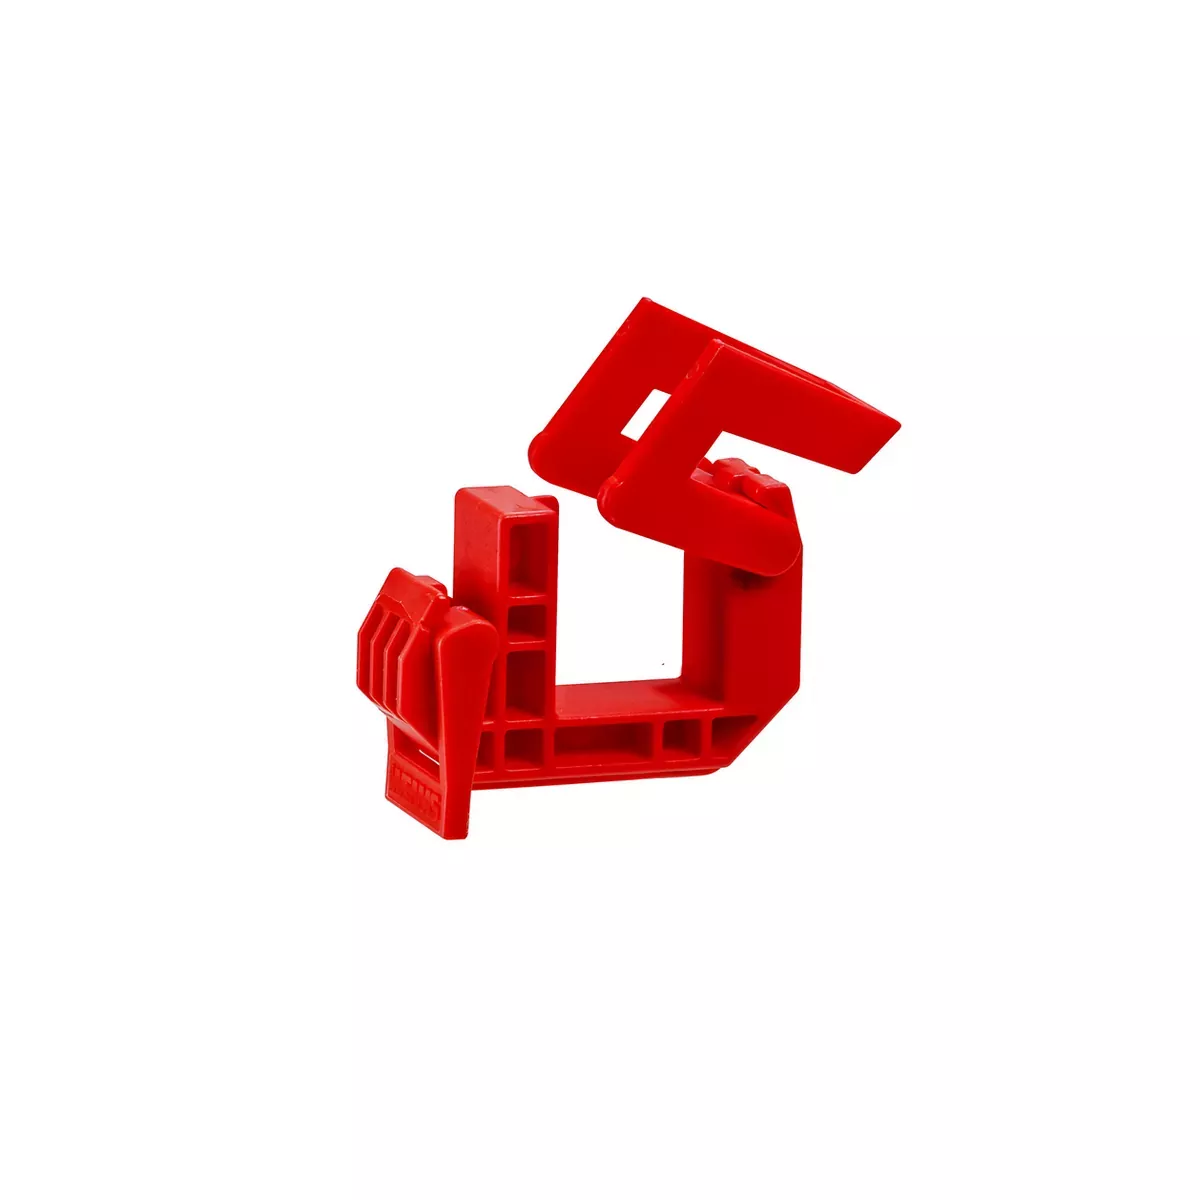 Duplexklemme Alform, rot für randverformte Schilder